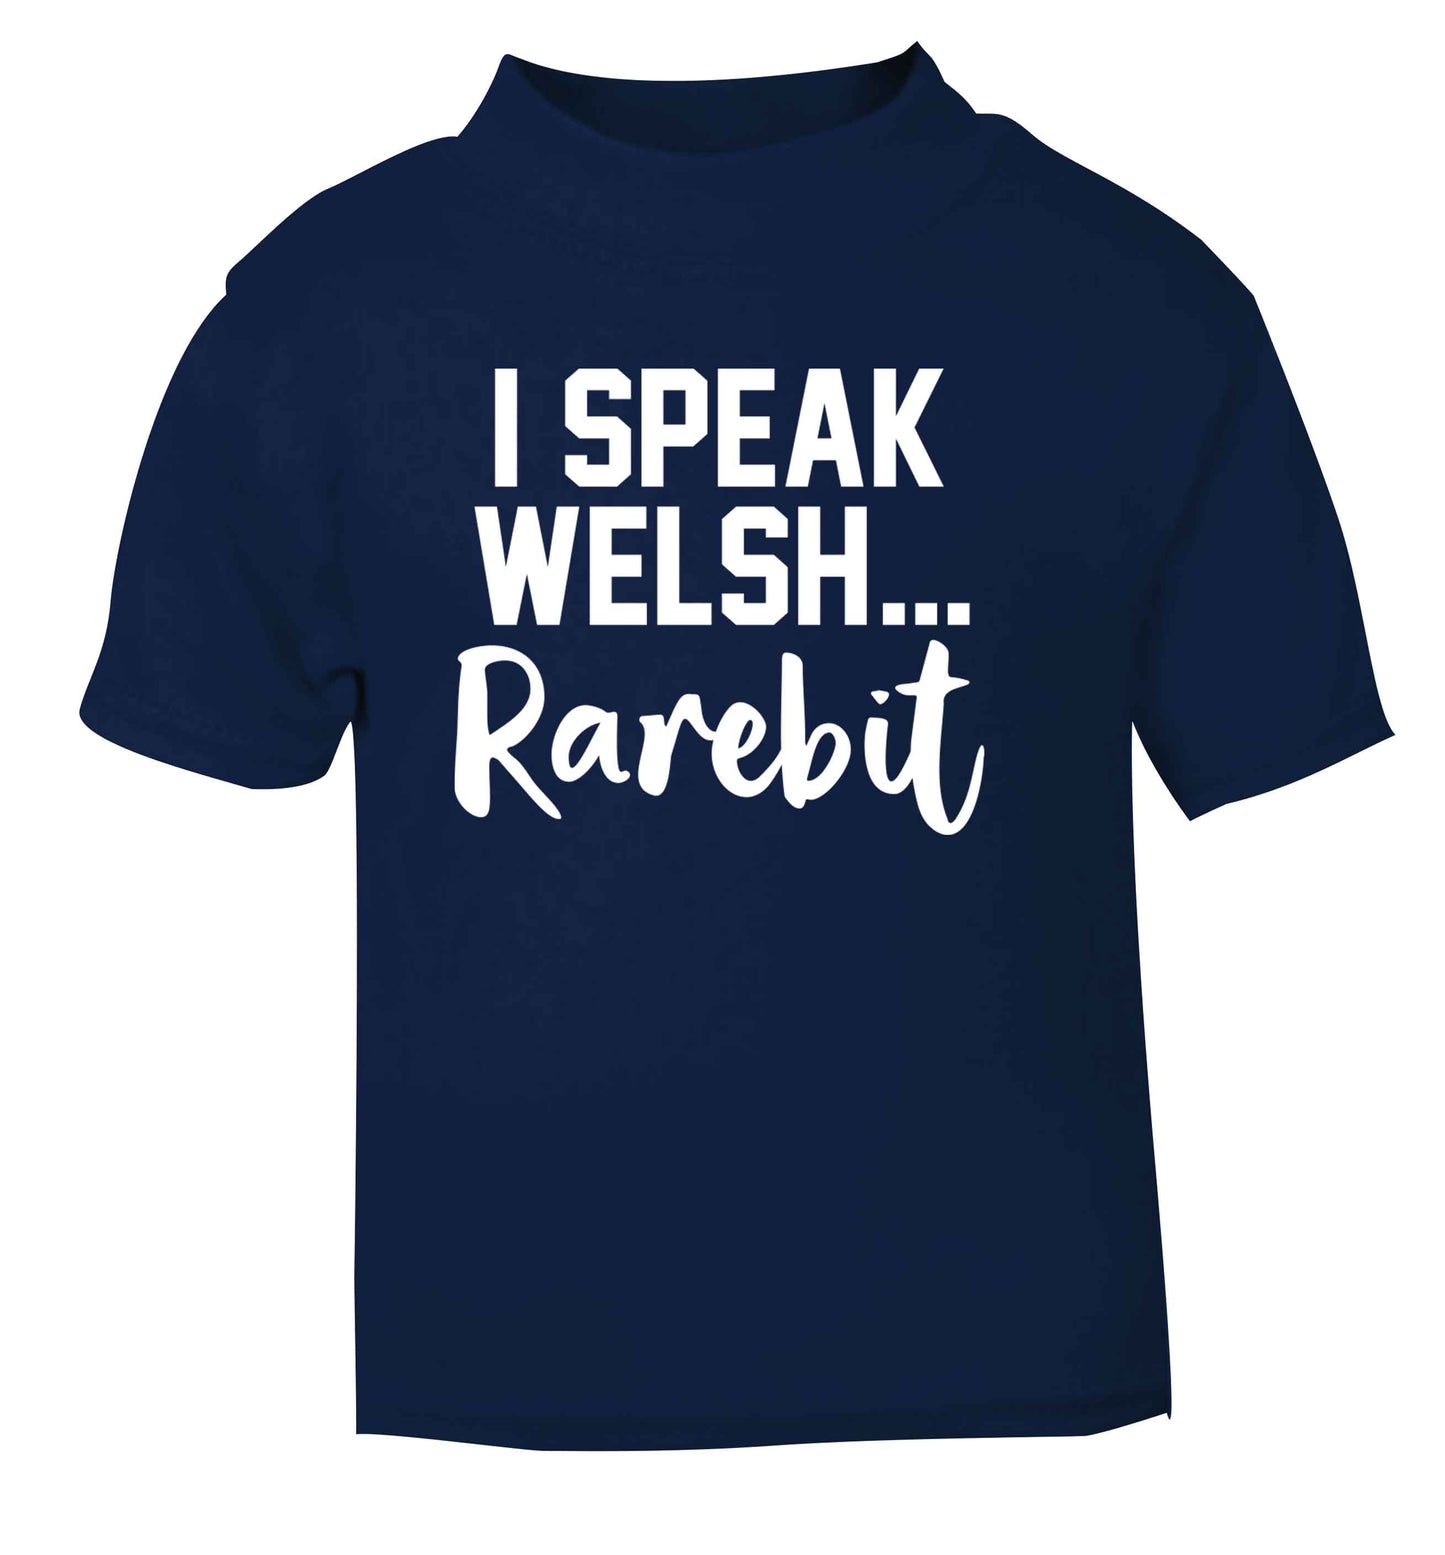 I speak Welsh...rarebit navy Baby Toddler Tshirt 2 Years